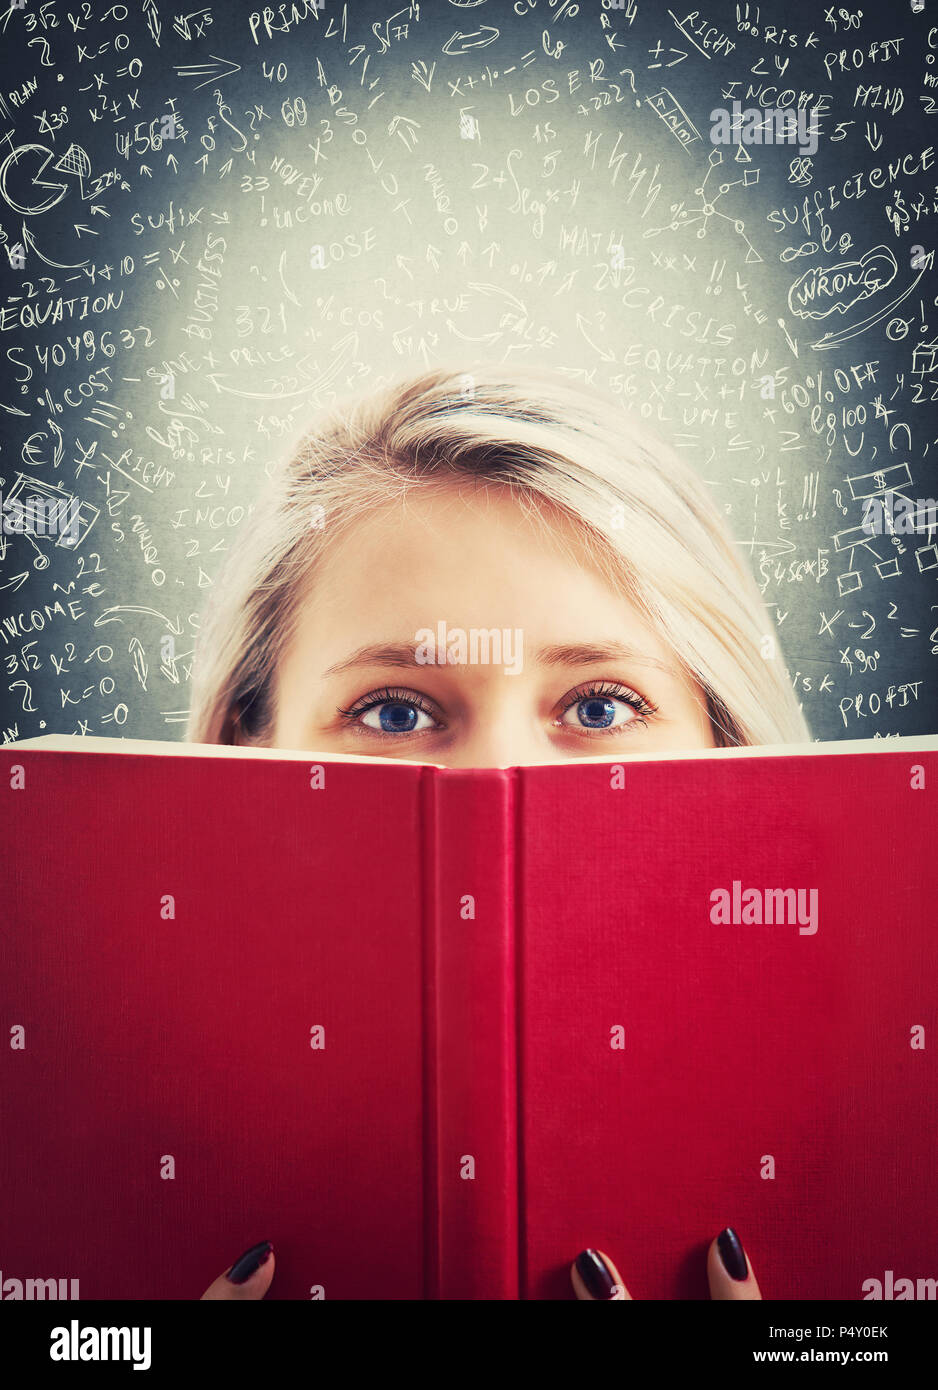 Close up portrait of girl étudiant à se cacher derrière un livre. Trouver la bonne réponse à la difficile calcul mathématiques. Résoudre equati Banque D'Images